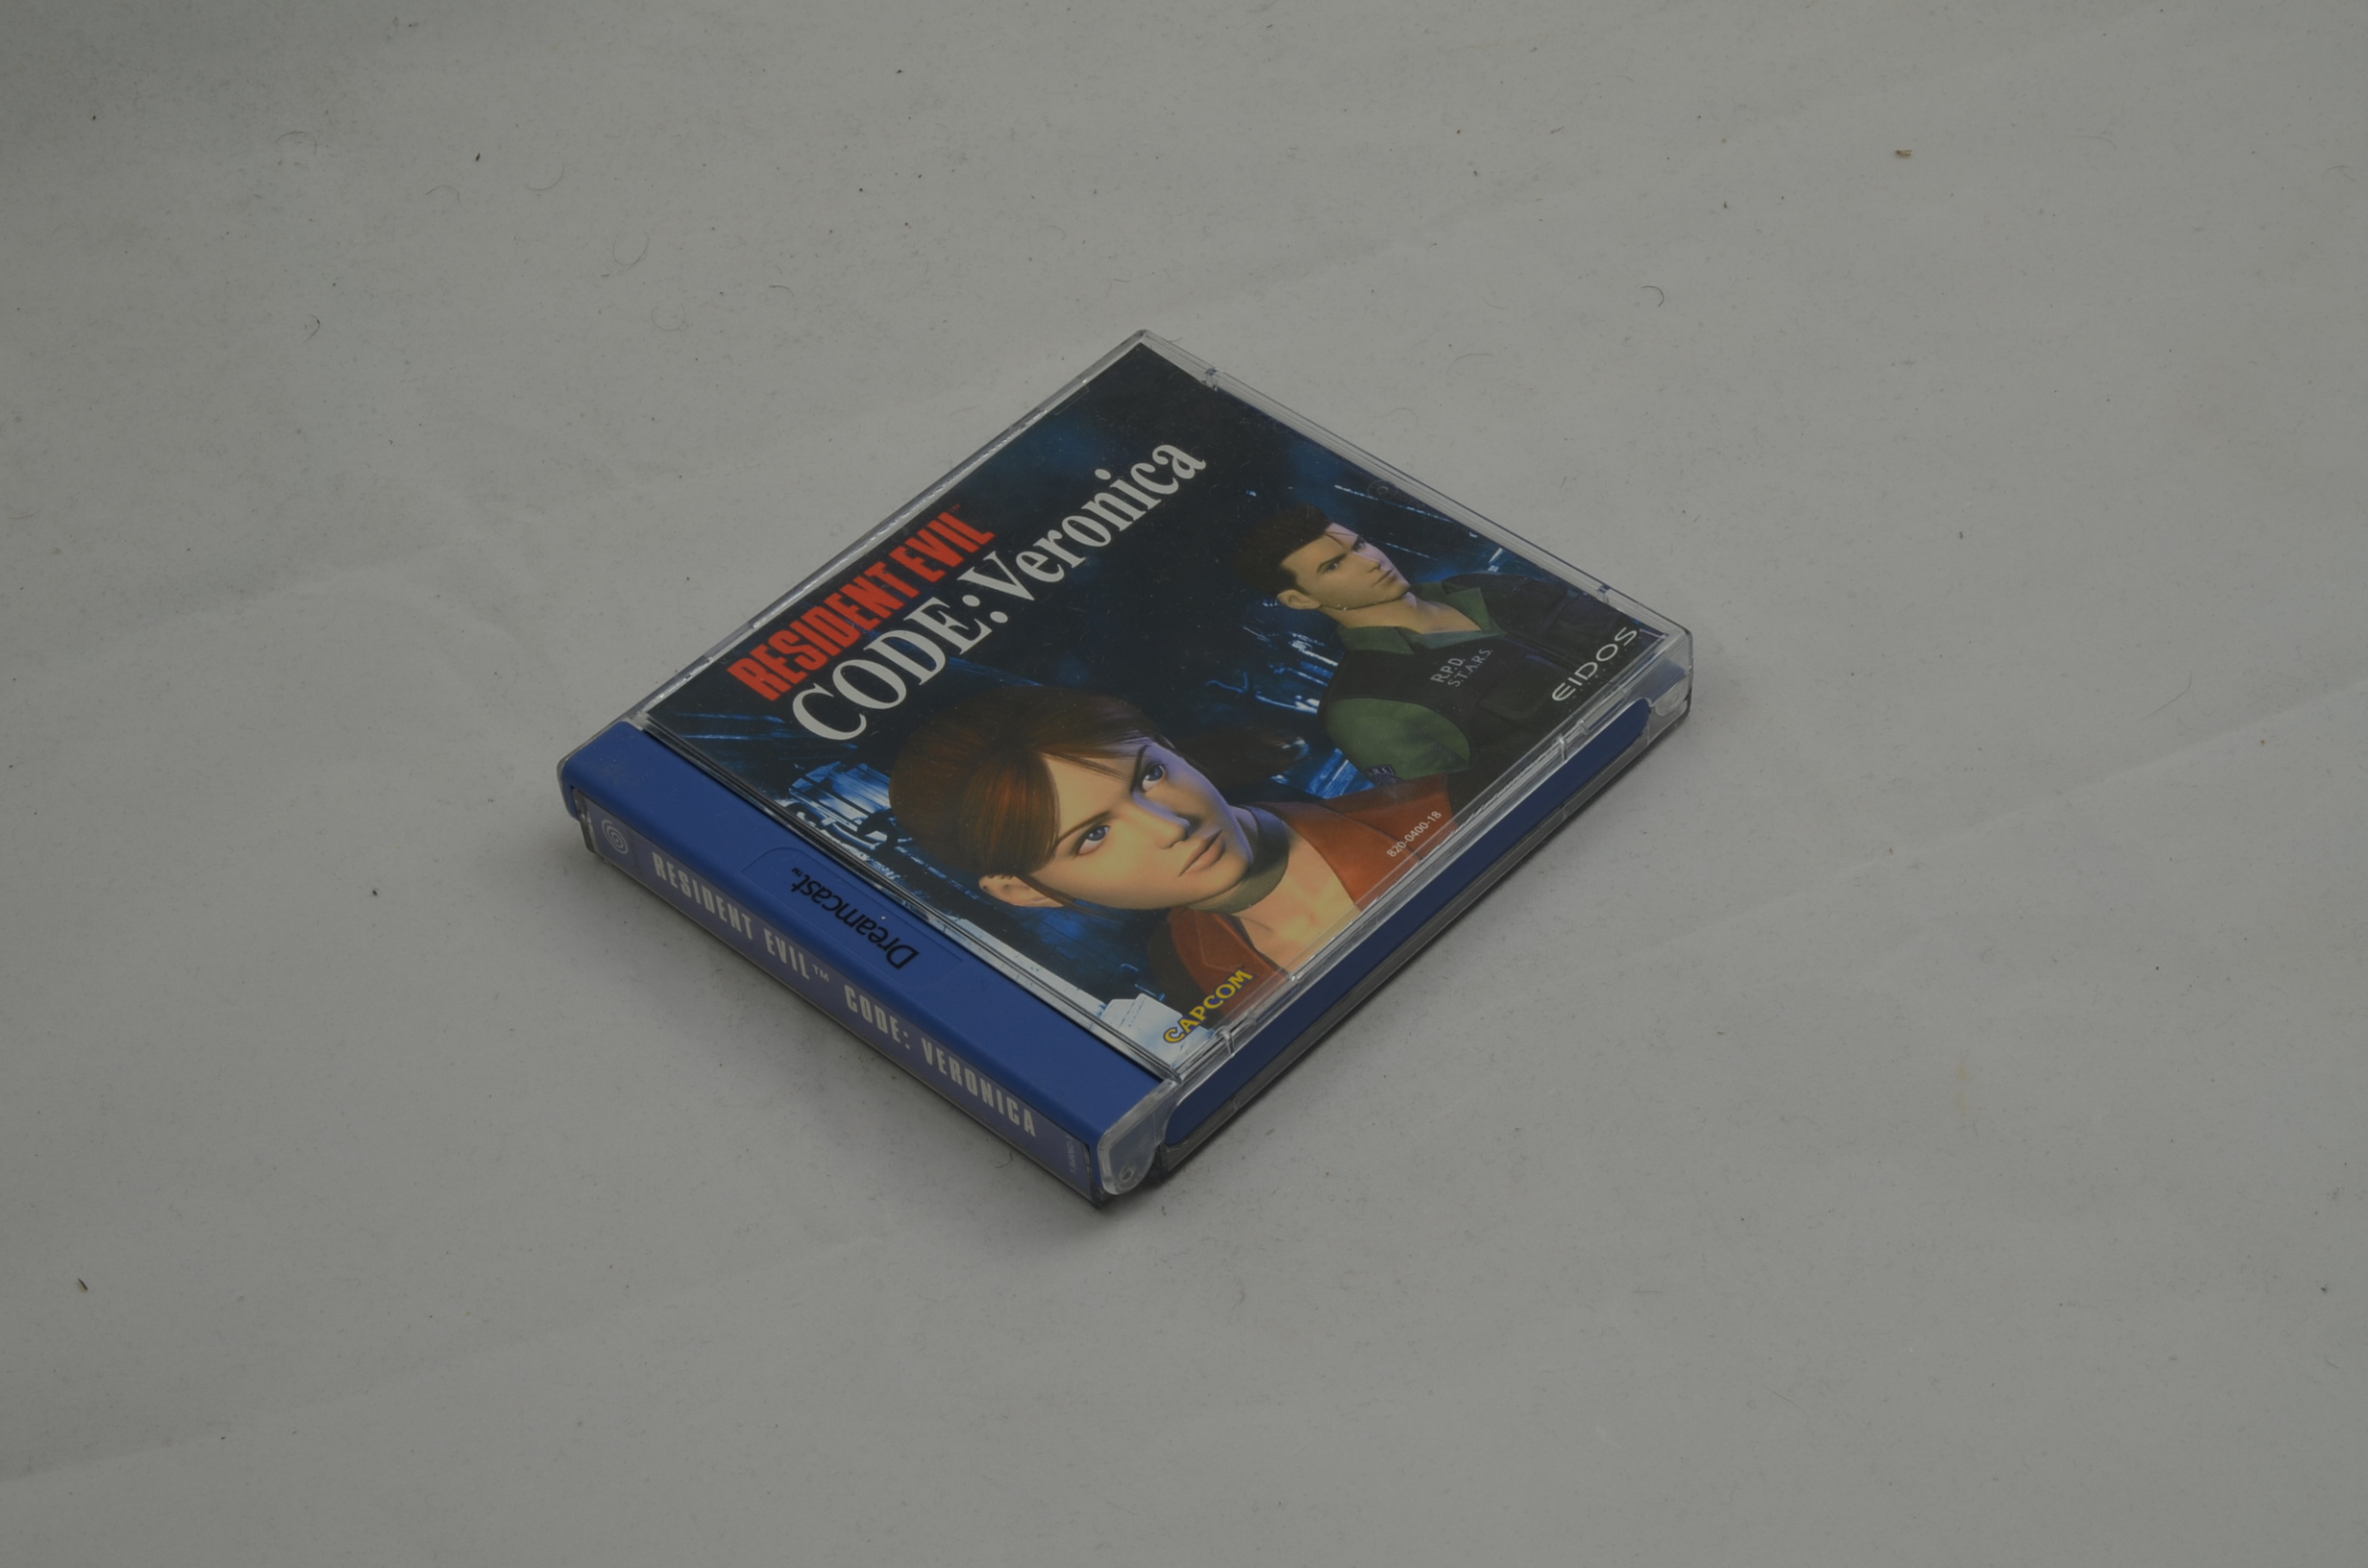 Produktbild von Resident Evil Code: Veronica Sega Dreamcast Spiel CIB (sehr gut)